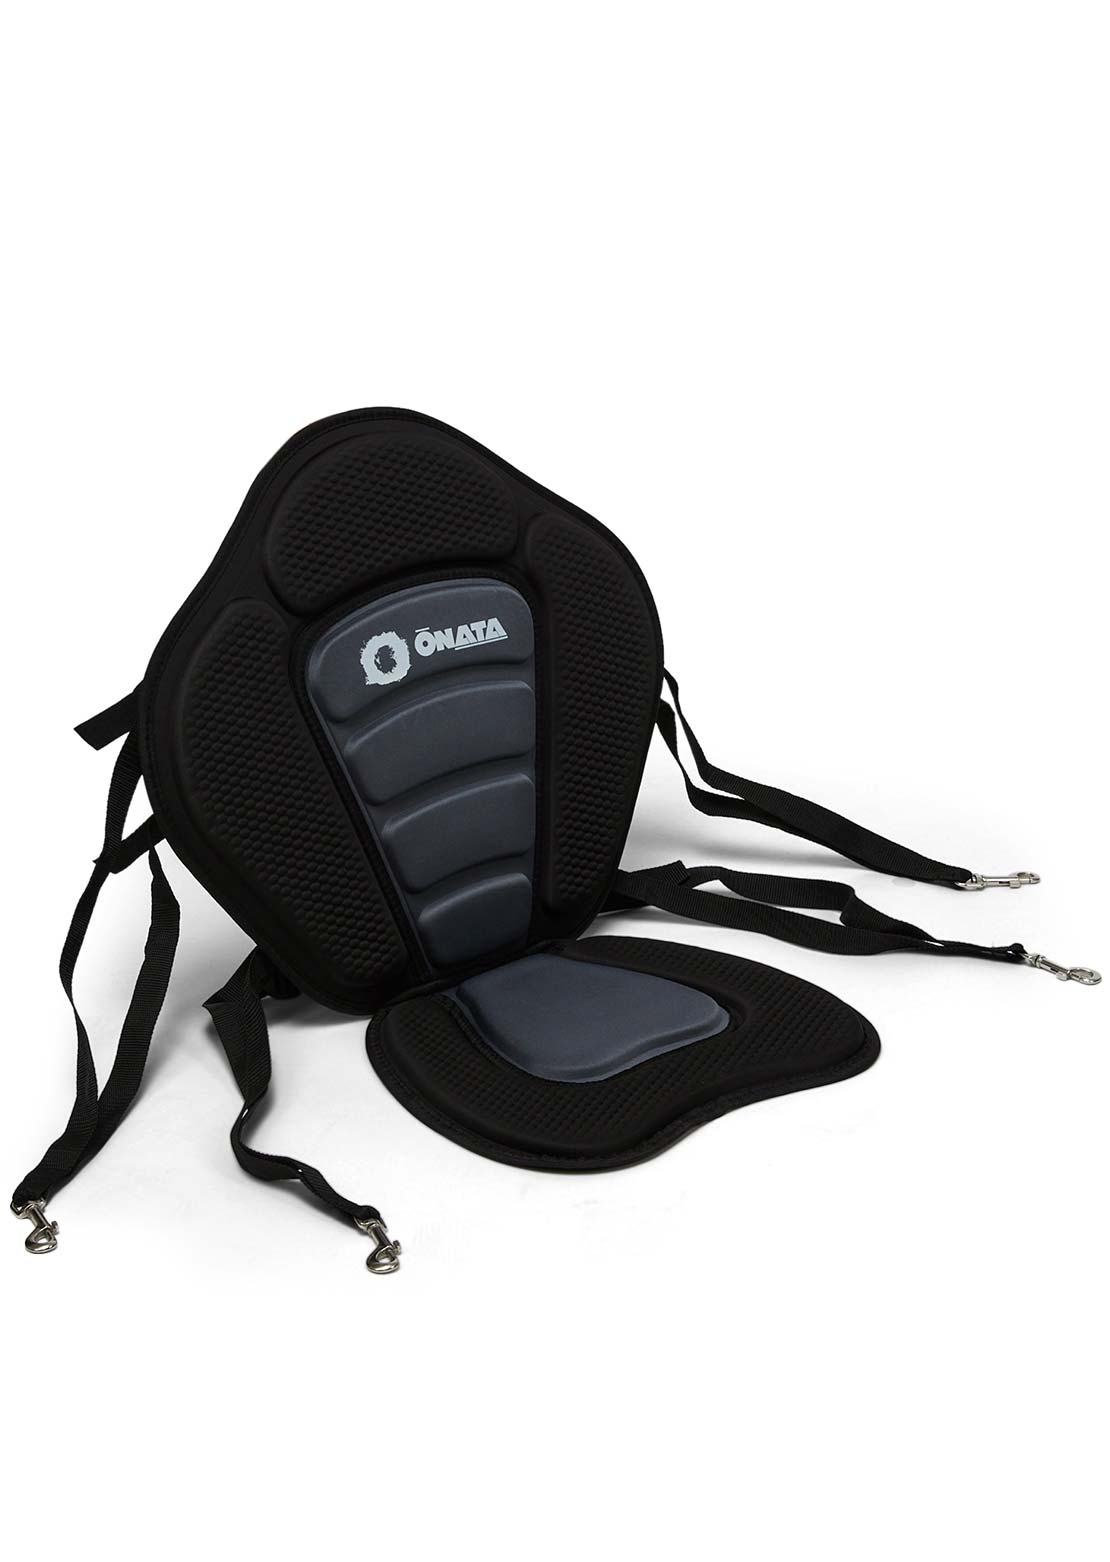 Onata Viper 10.6 + Seat Convertible Paddleboard